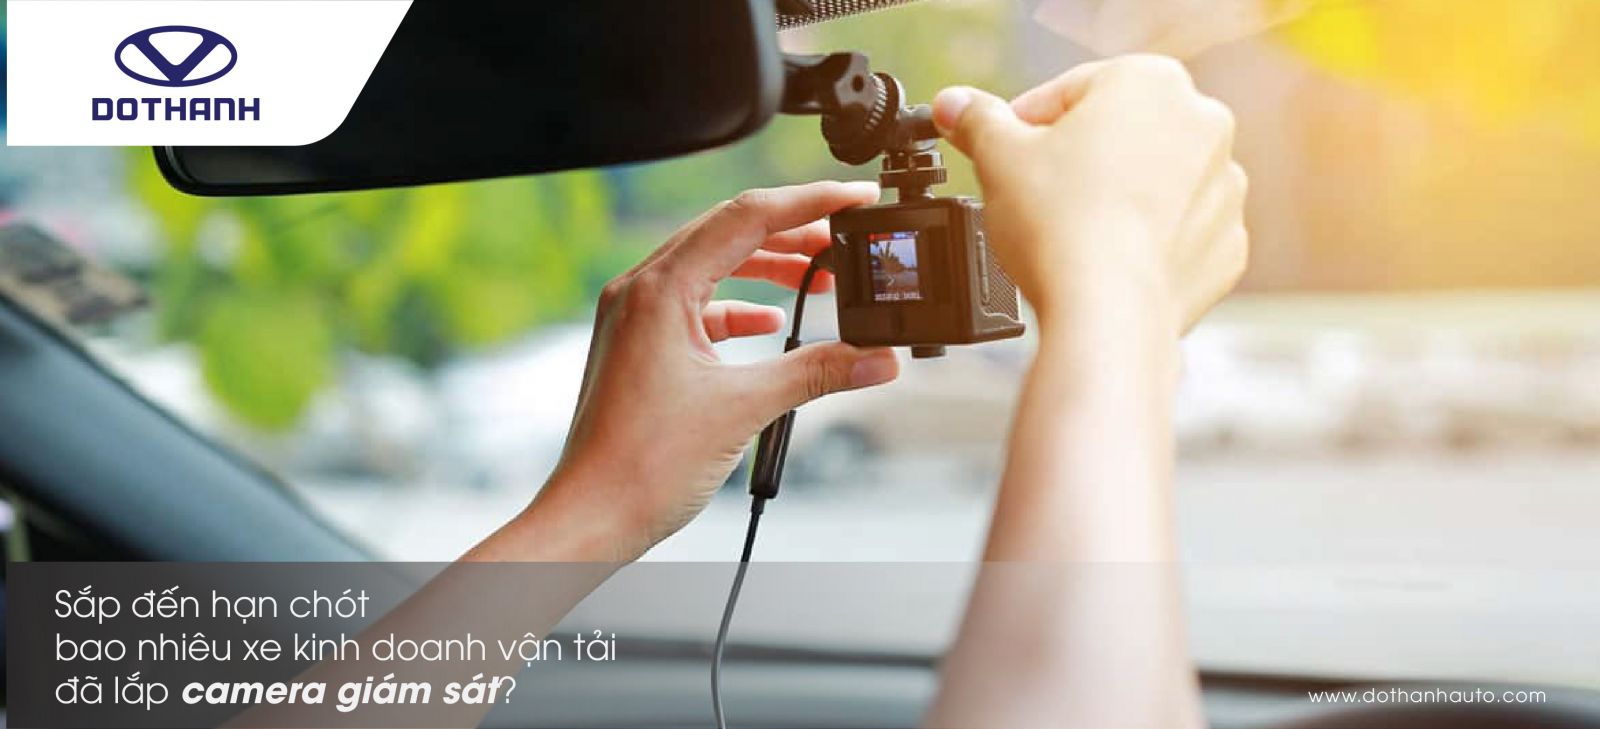 Sắp đến hạn chót, bao nhiêu xe kinh doanh vận tải đã lắp camera giám sát?